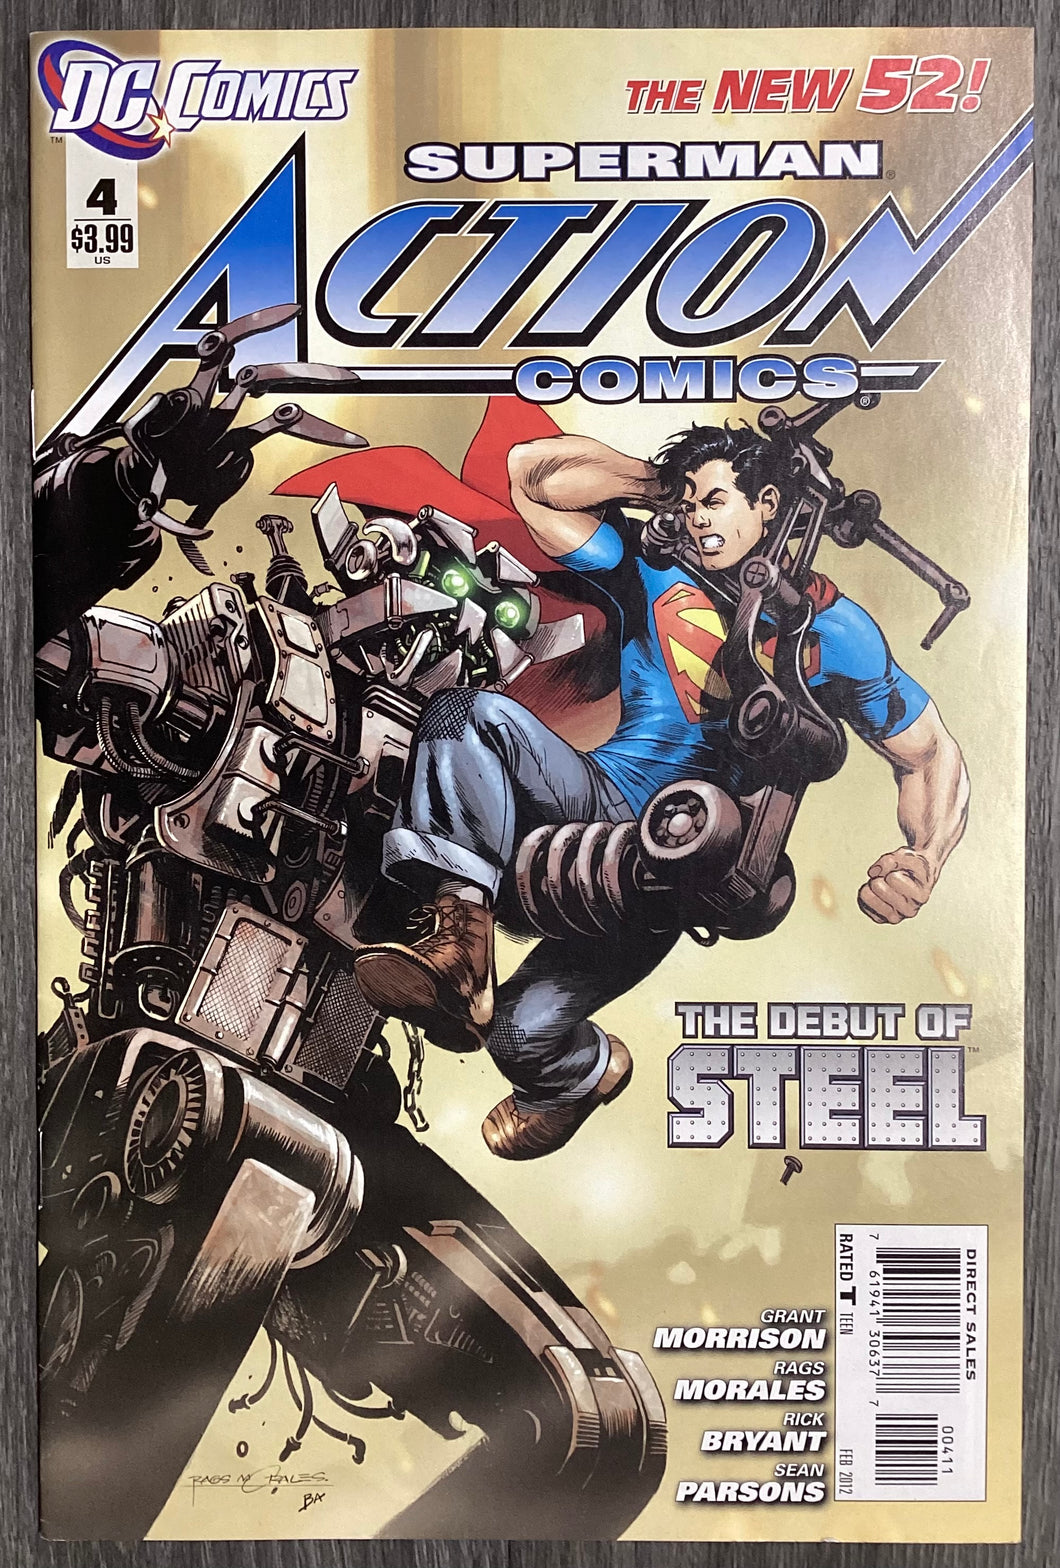 Action Comics (New 52) No. #4 2012 DC Comics